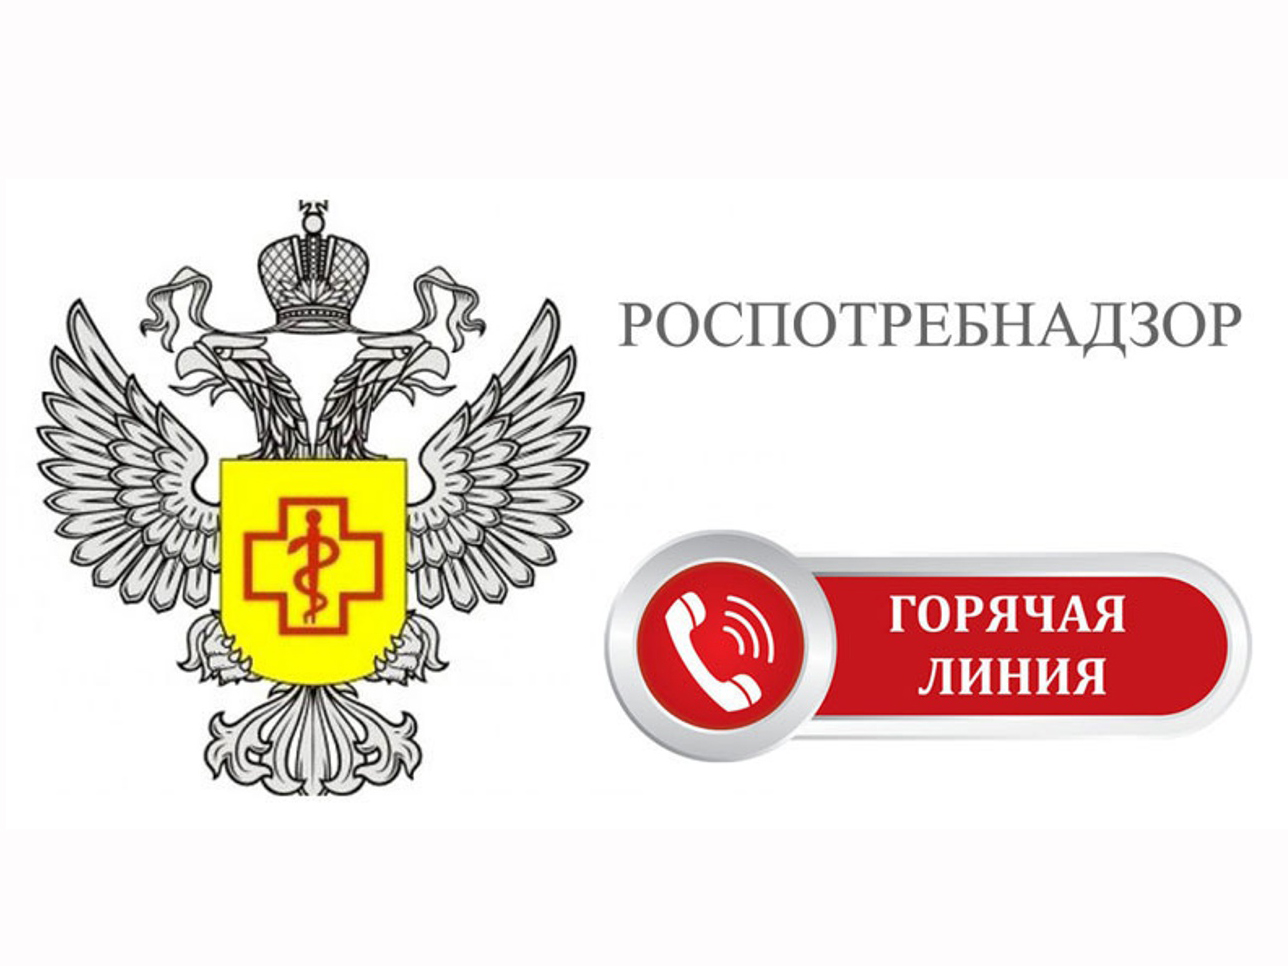 В Управлении Роспотребнадзора по Воронежской области открыли «горячую линию» по услугам такси и каршеринга.